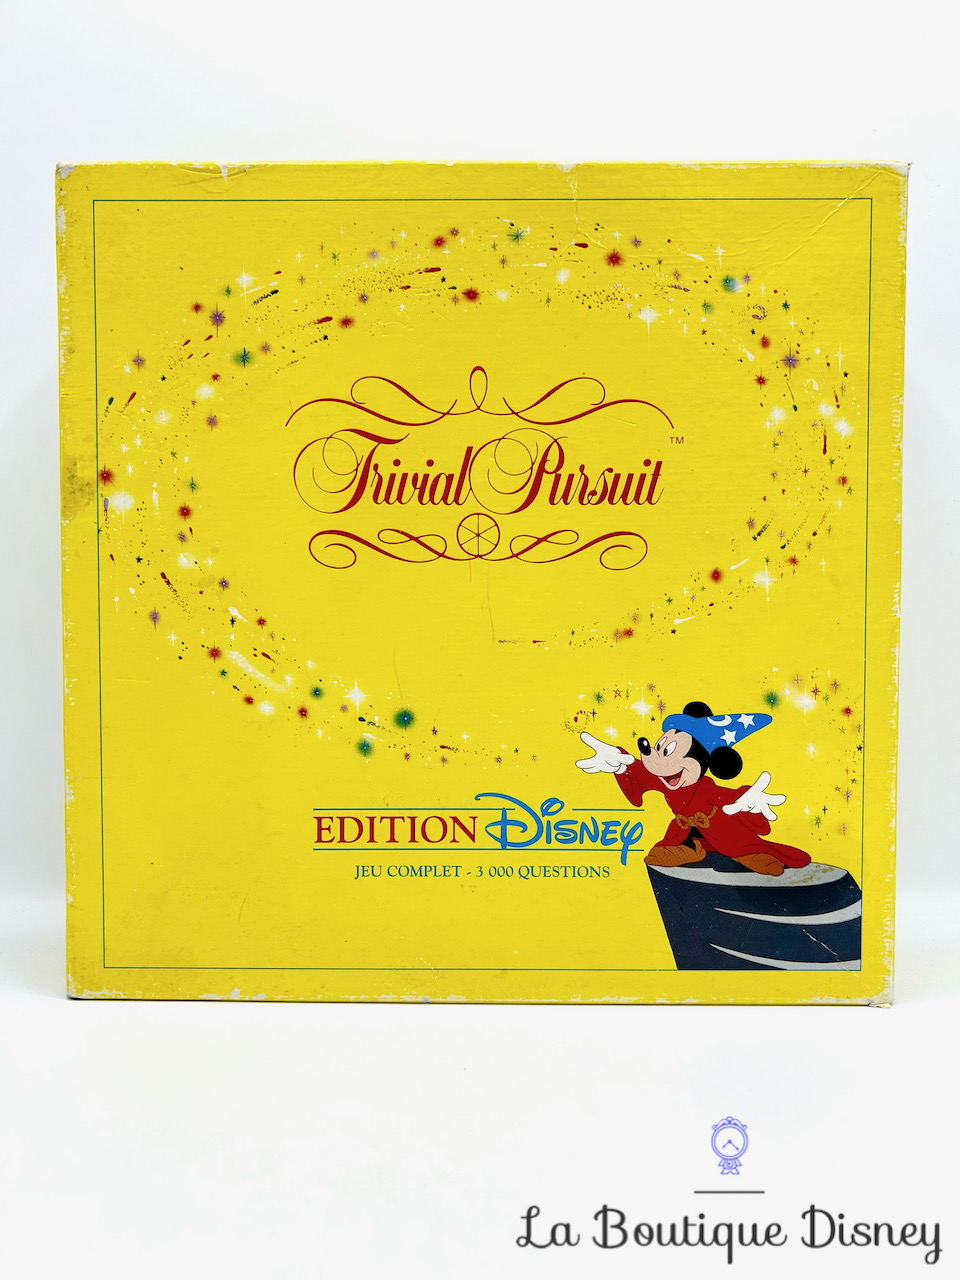 Jeu de société Trivial Pursuit Disney 1992 Première édition jaune vintage